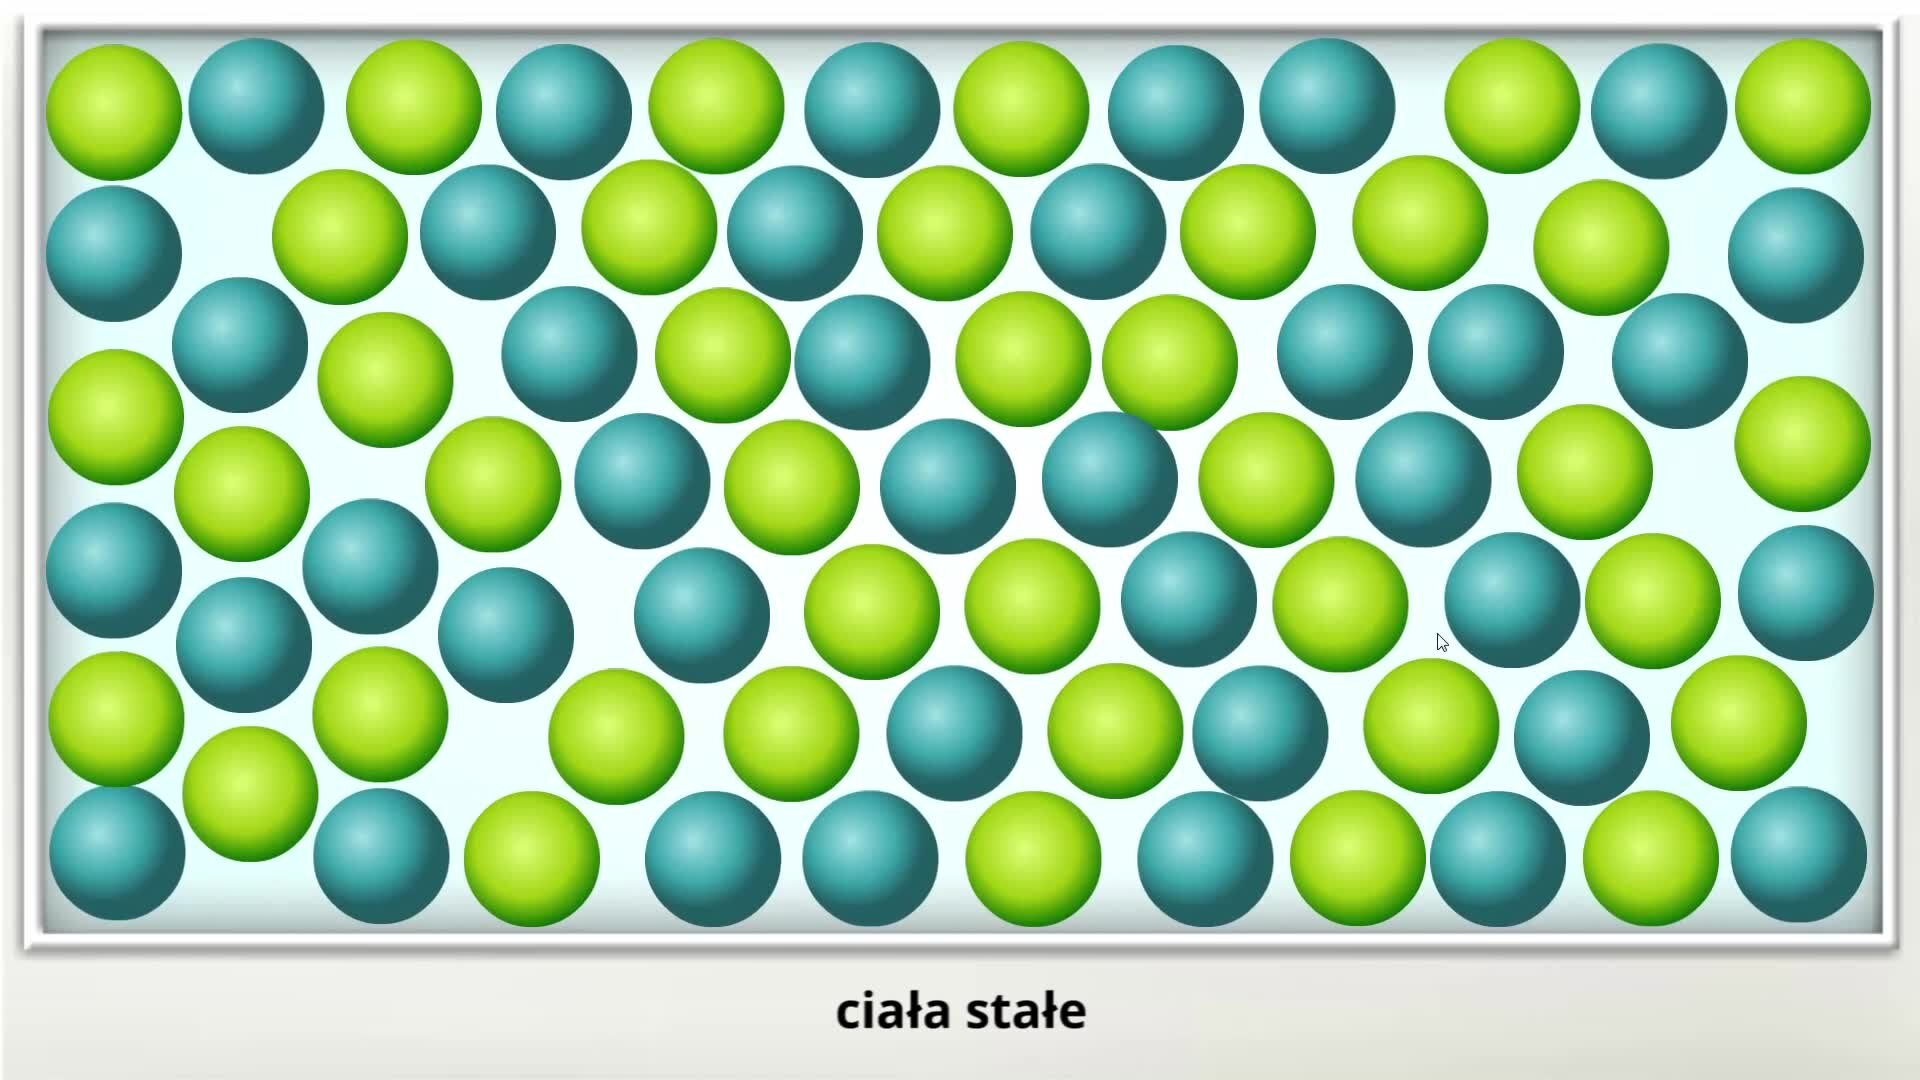 Ilustracja przedstawia zielono‑niebieskie kulki. Jest to model obrazujący ułożenie drobin w ciele stałym. Cząsteczki znajdują się bardzo blisko siebie.